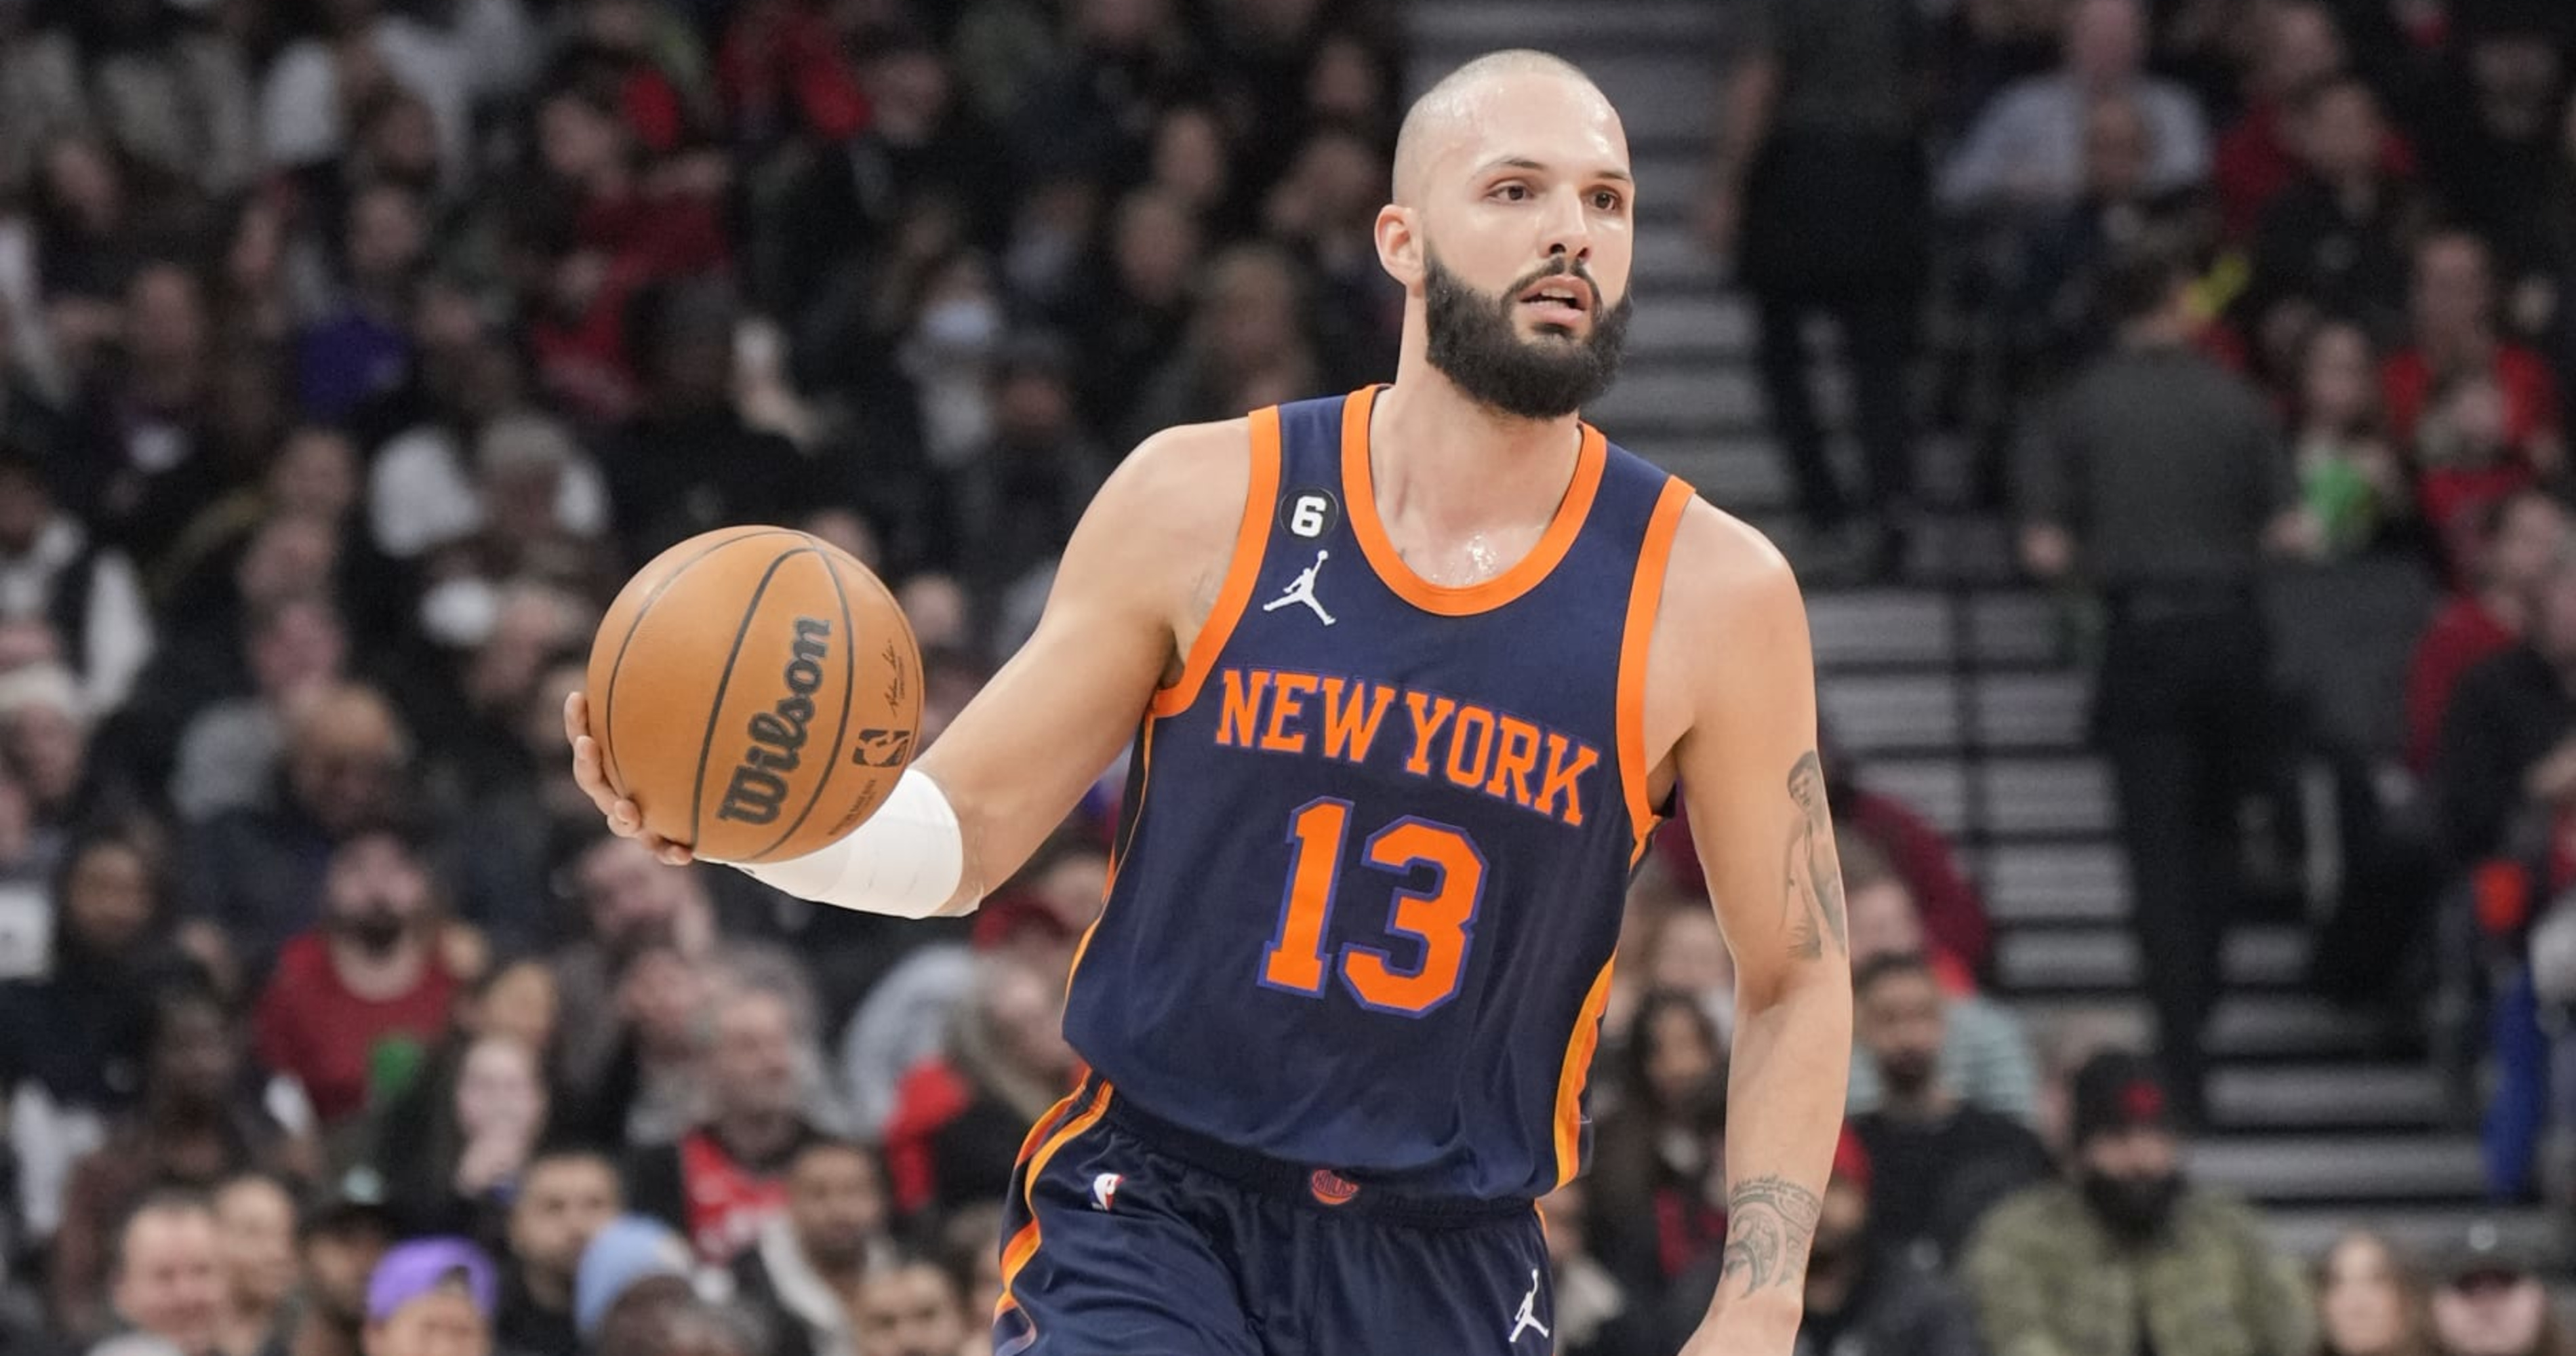 New York Knicks: Breaking News, Rumors & Highlights